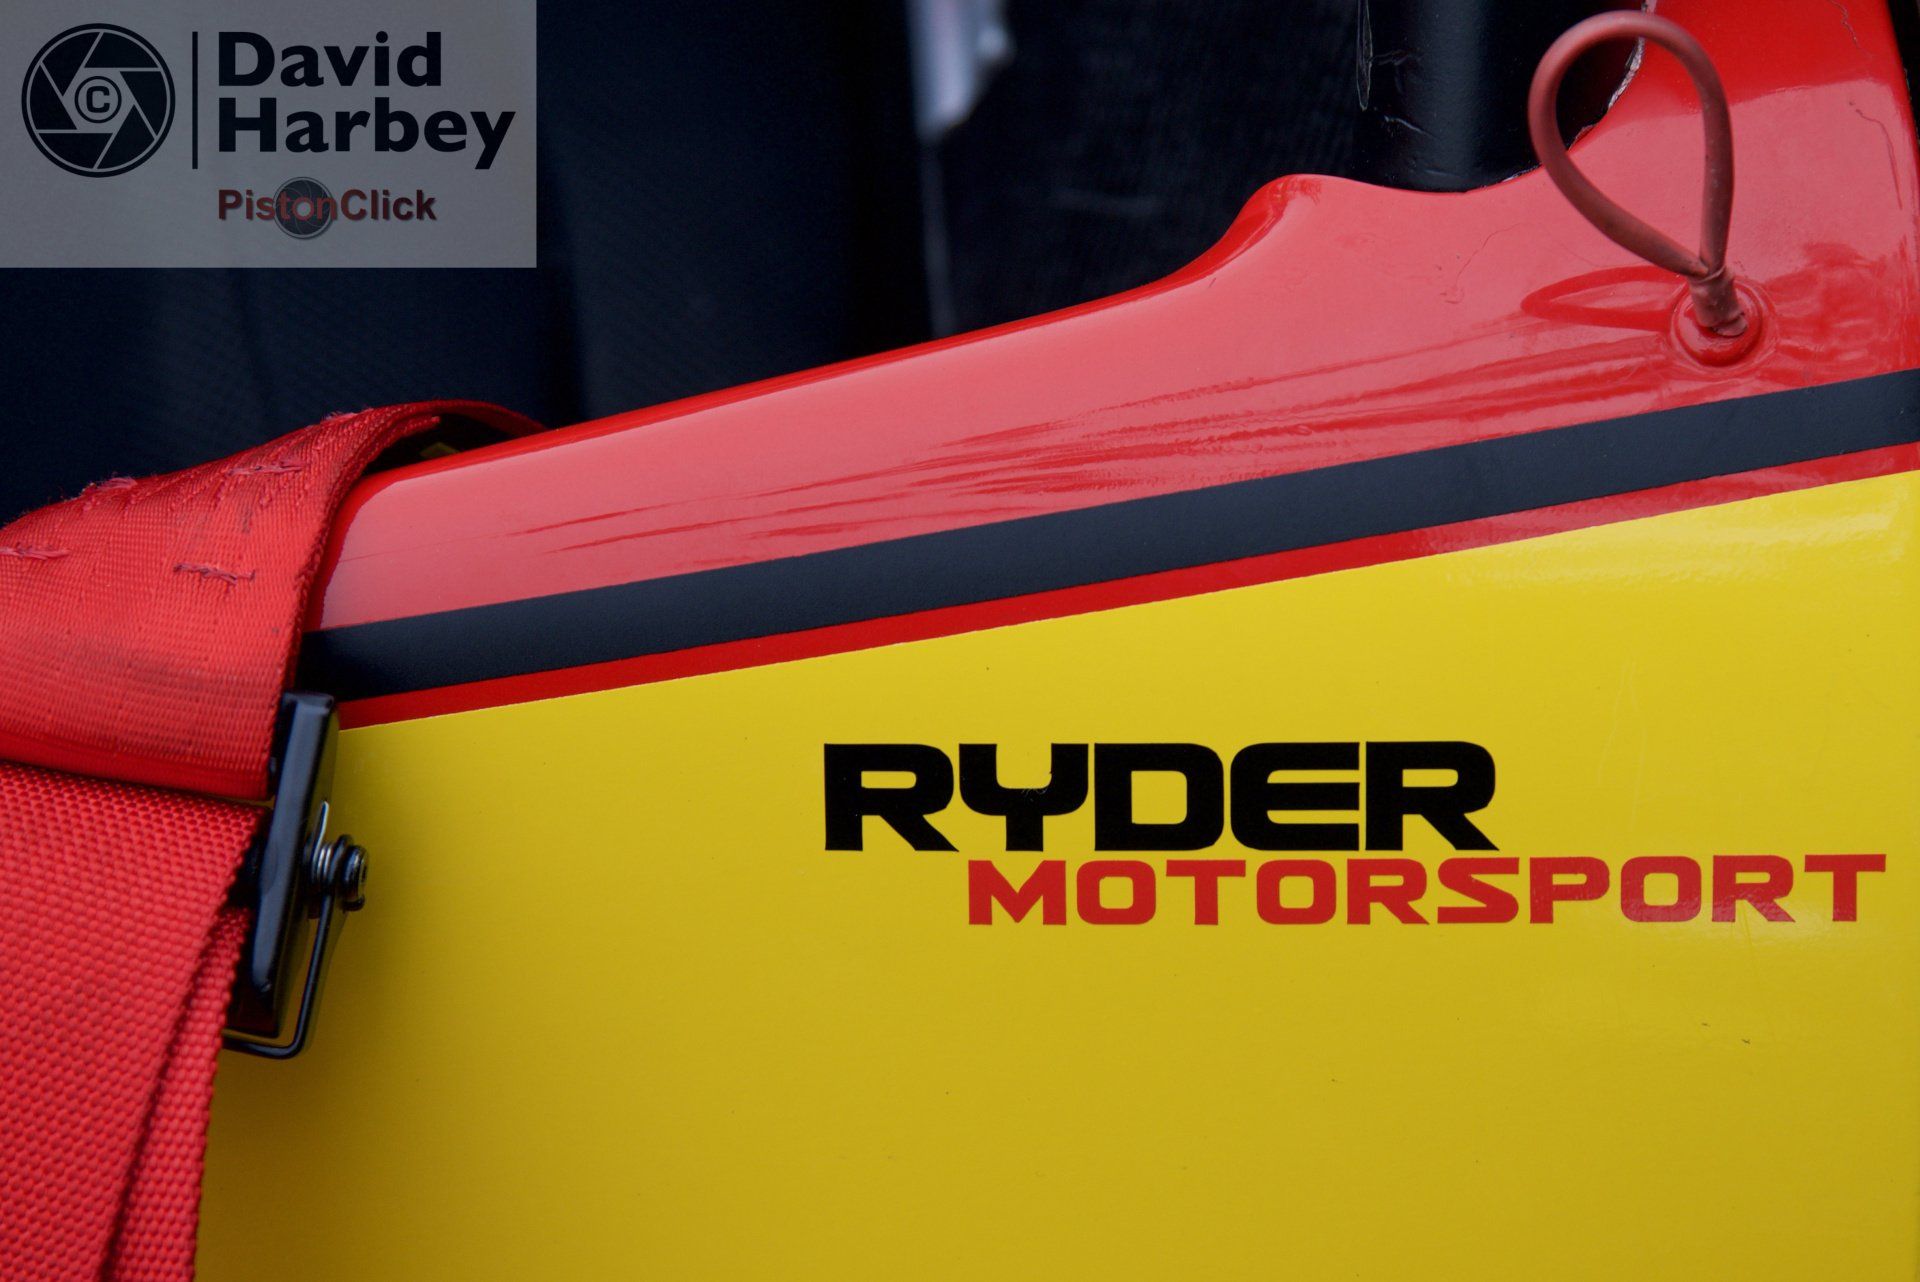 Ryder Motorsport